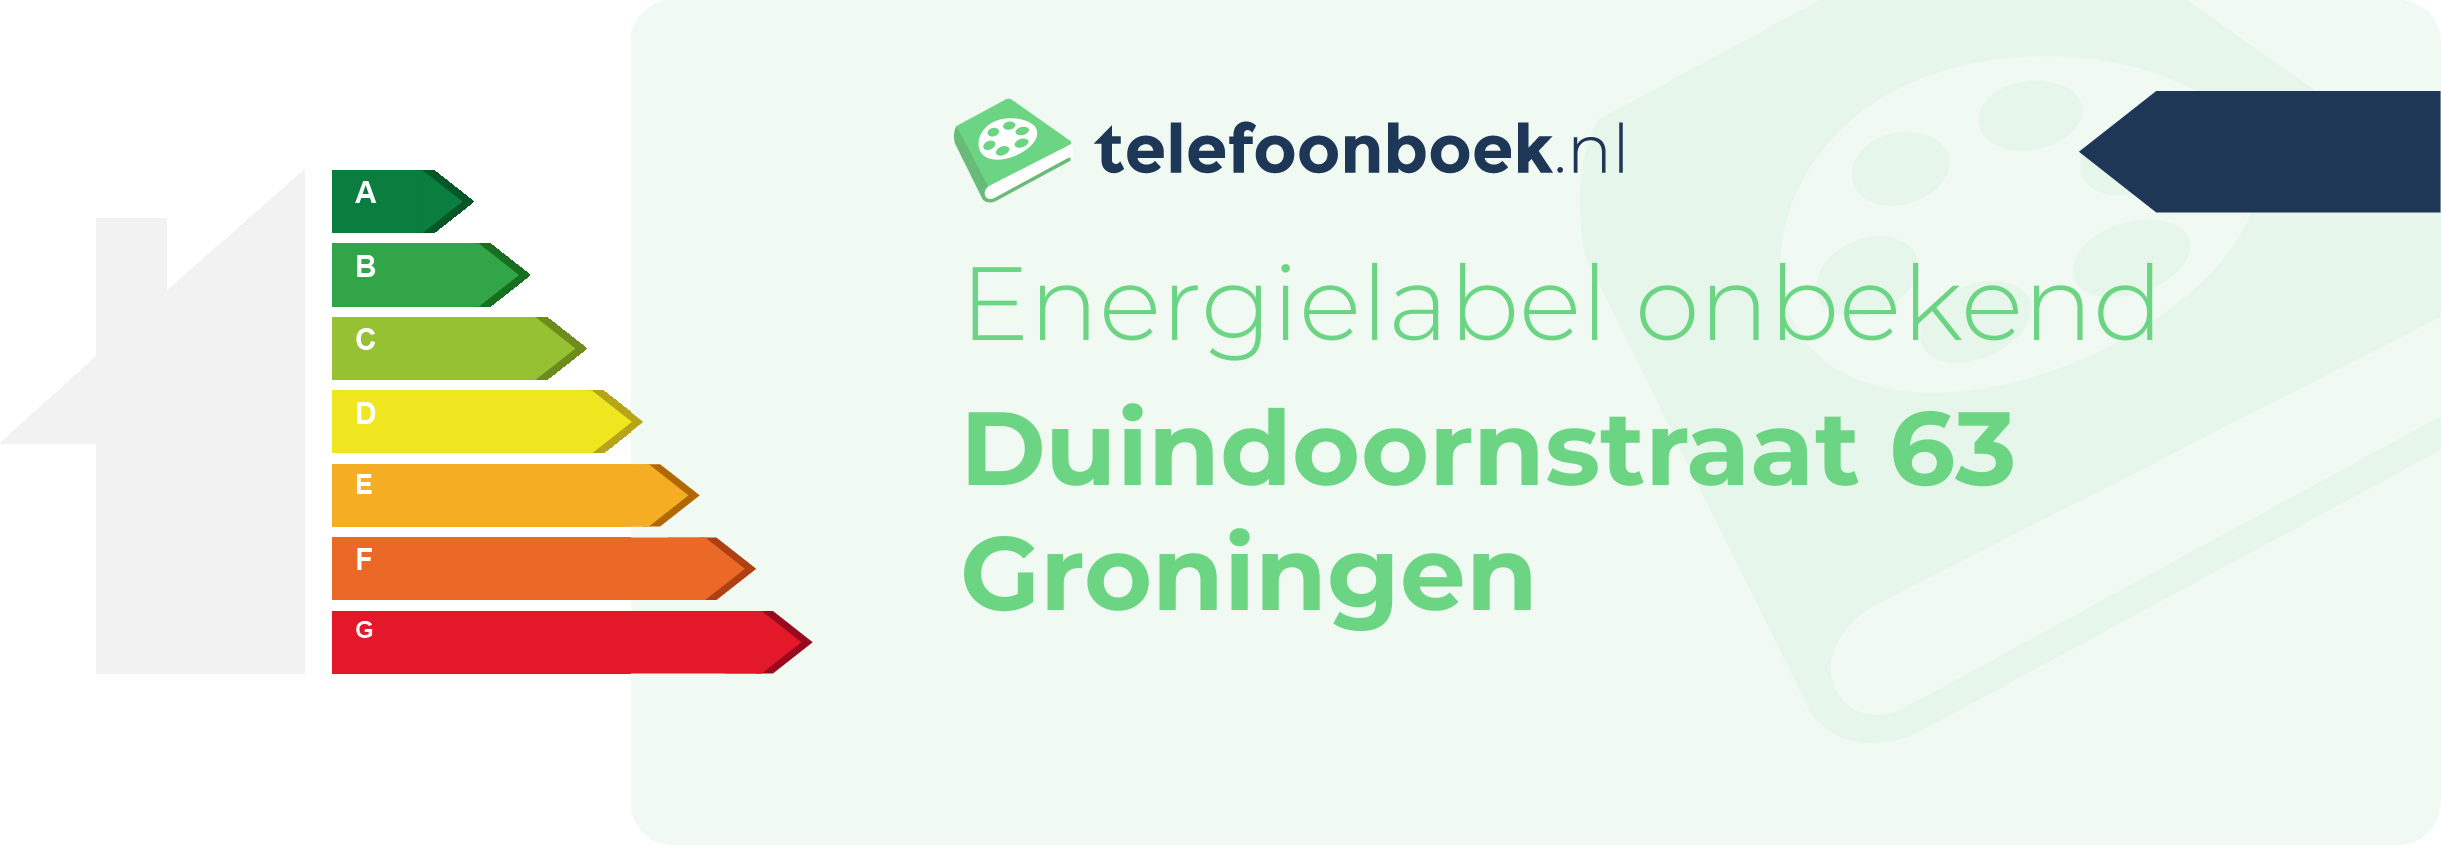 Energielabel Duindoornstraat 63 Groningen